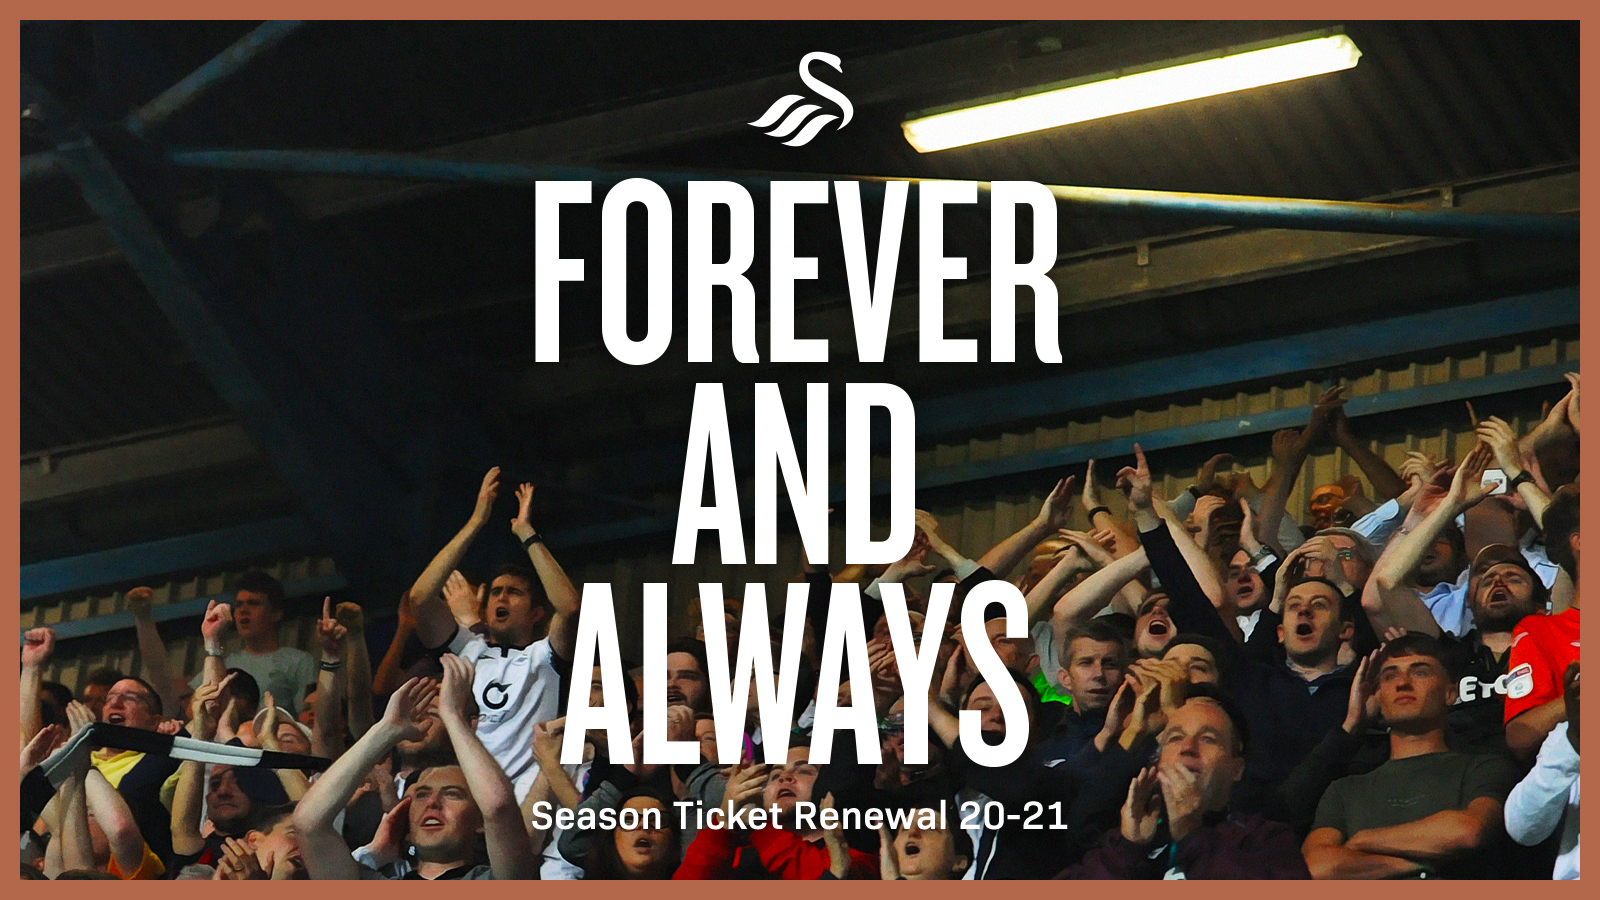 Season ticket renewal updated